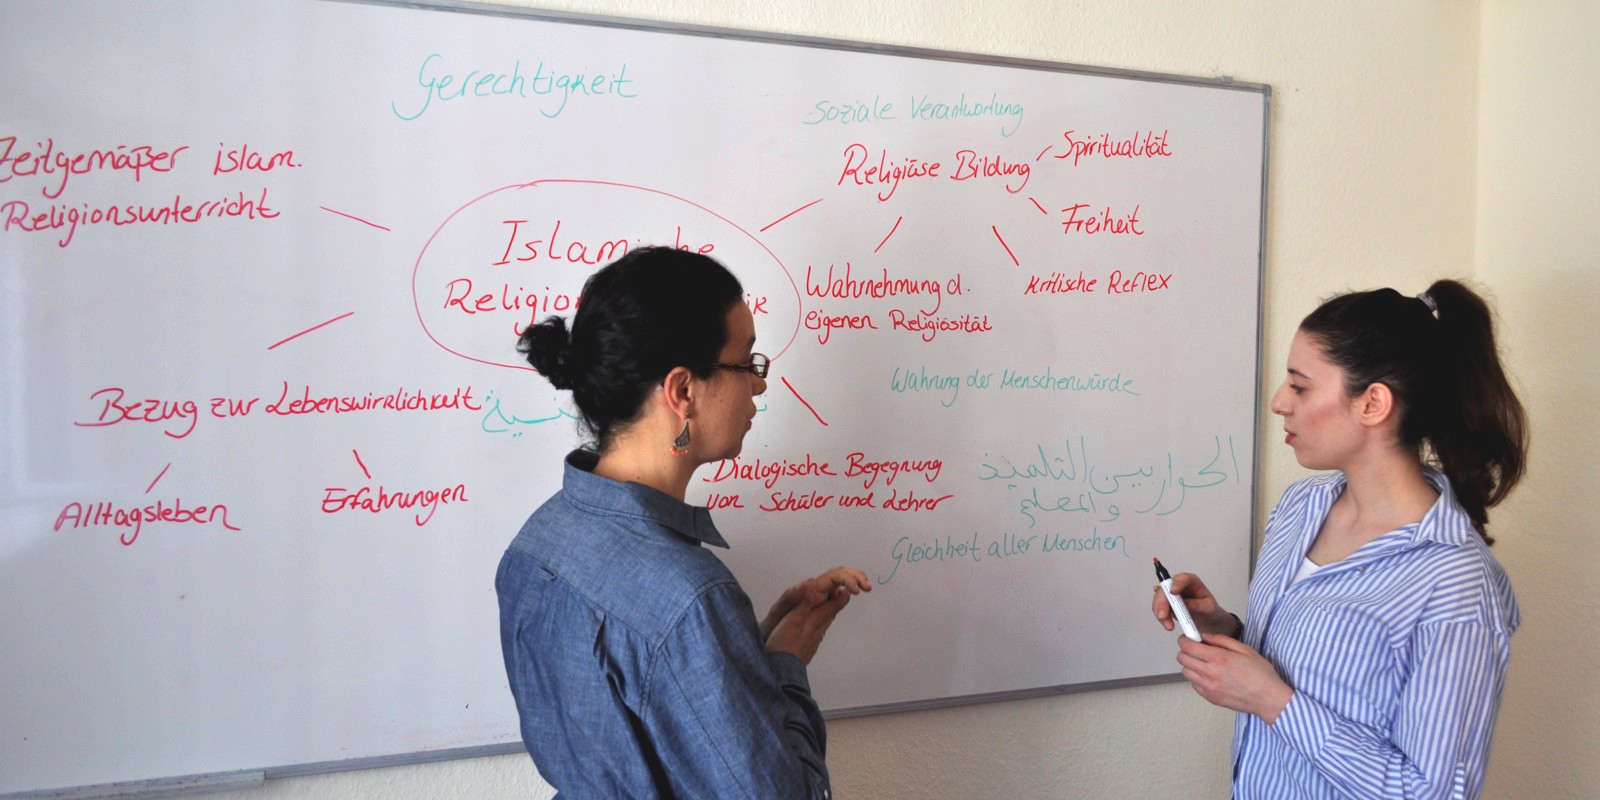 Zwei Personen stehen zueinander gewandt vor einem Whiteboard, auf dem schon einiges geschrieben steht. Die rechte Person hält einen Stift in ihren Händen.